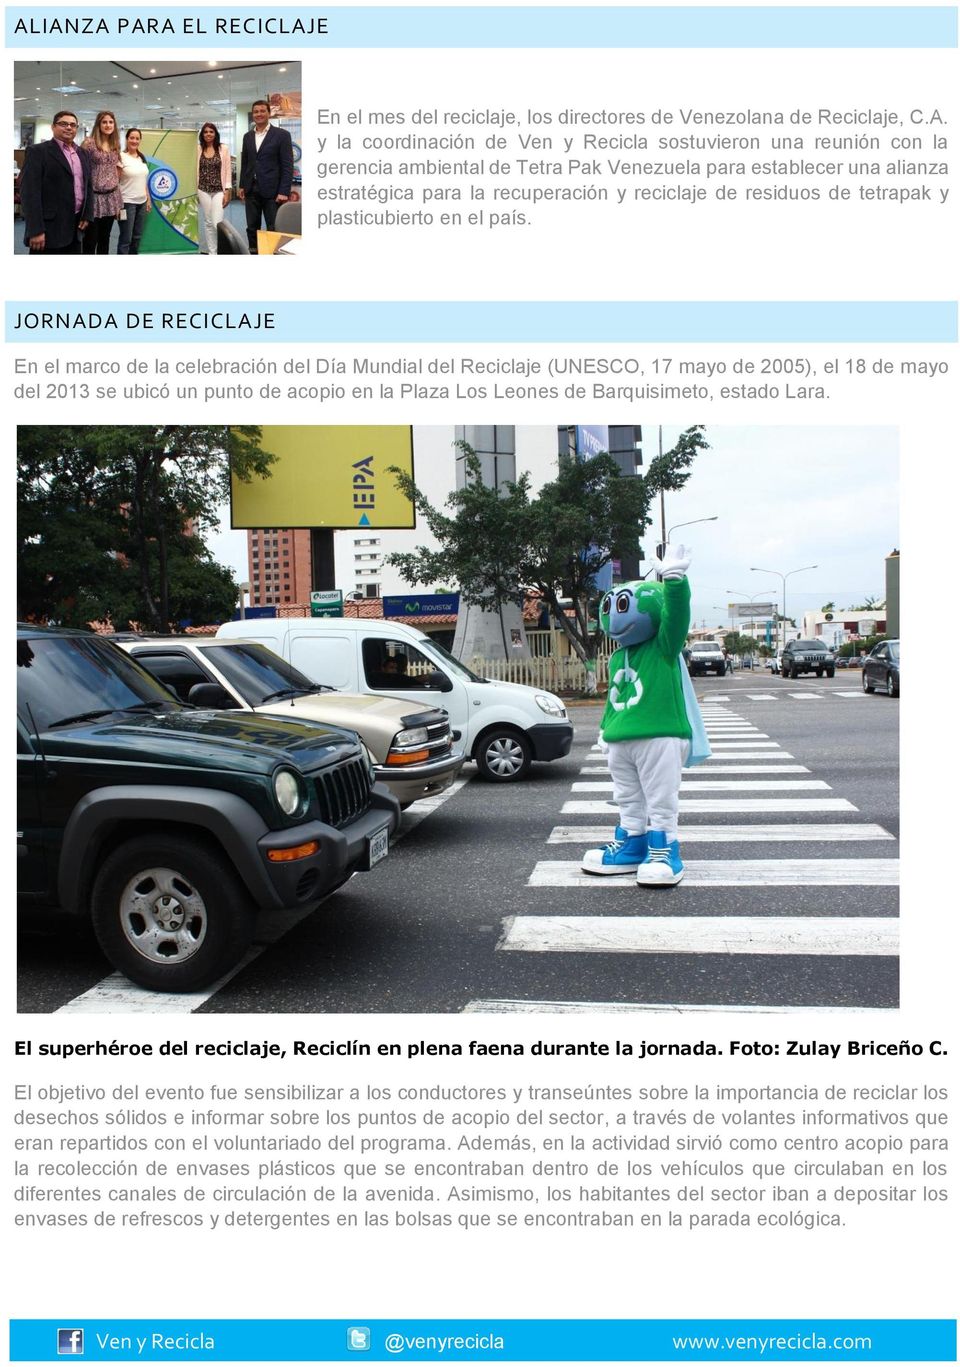 JORNADA DE RECICLAJE En el marco de la celebración del Día Mundial del Reciclaje (UNESCO, 17 mayo de 2005), el 18 de mayo del 2013 se ubicó un punto de acopio en la Plaza Los Leones de Barquisimeto,